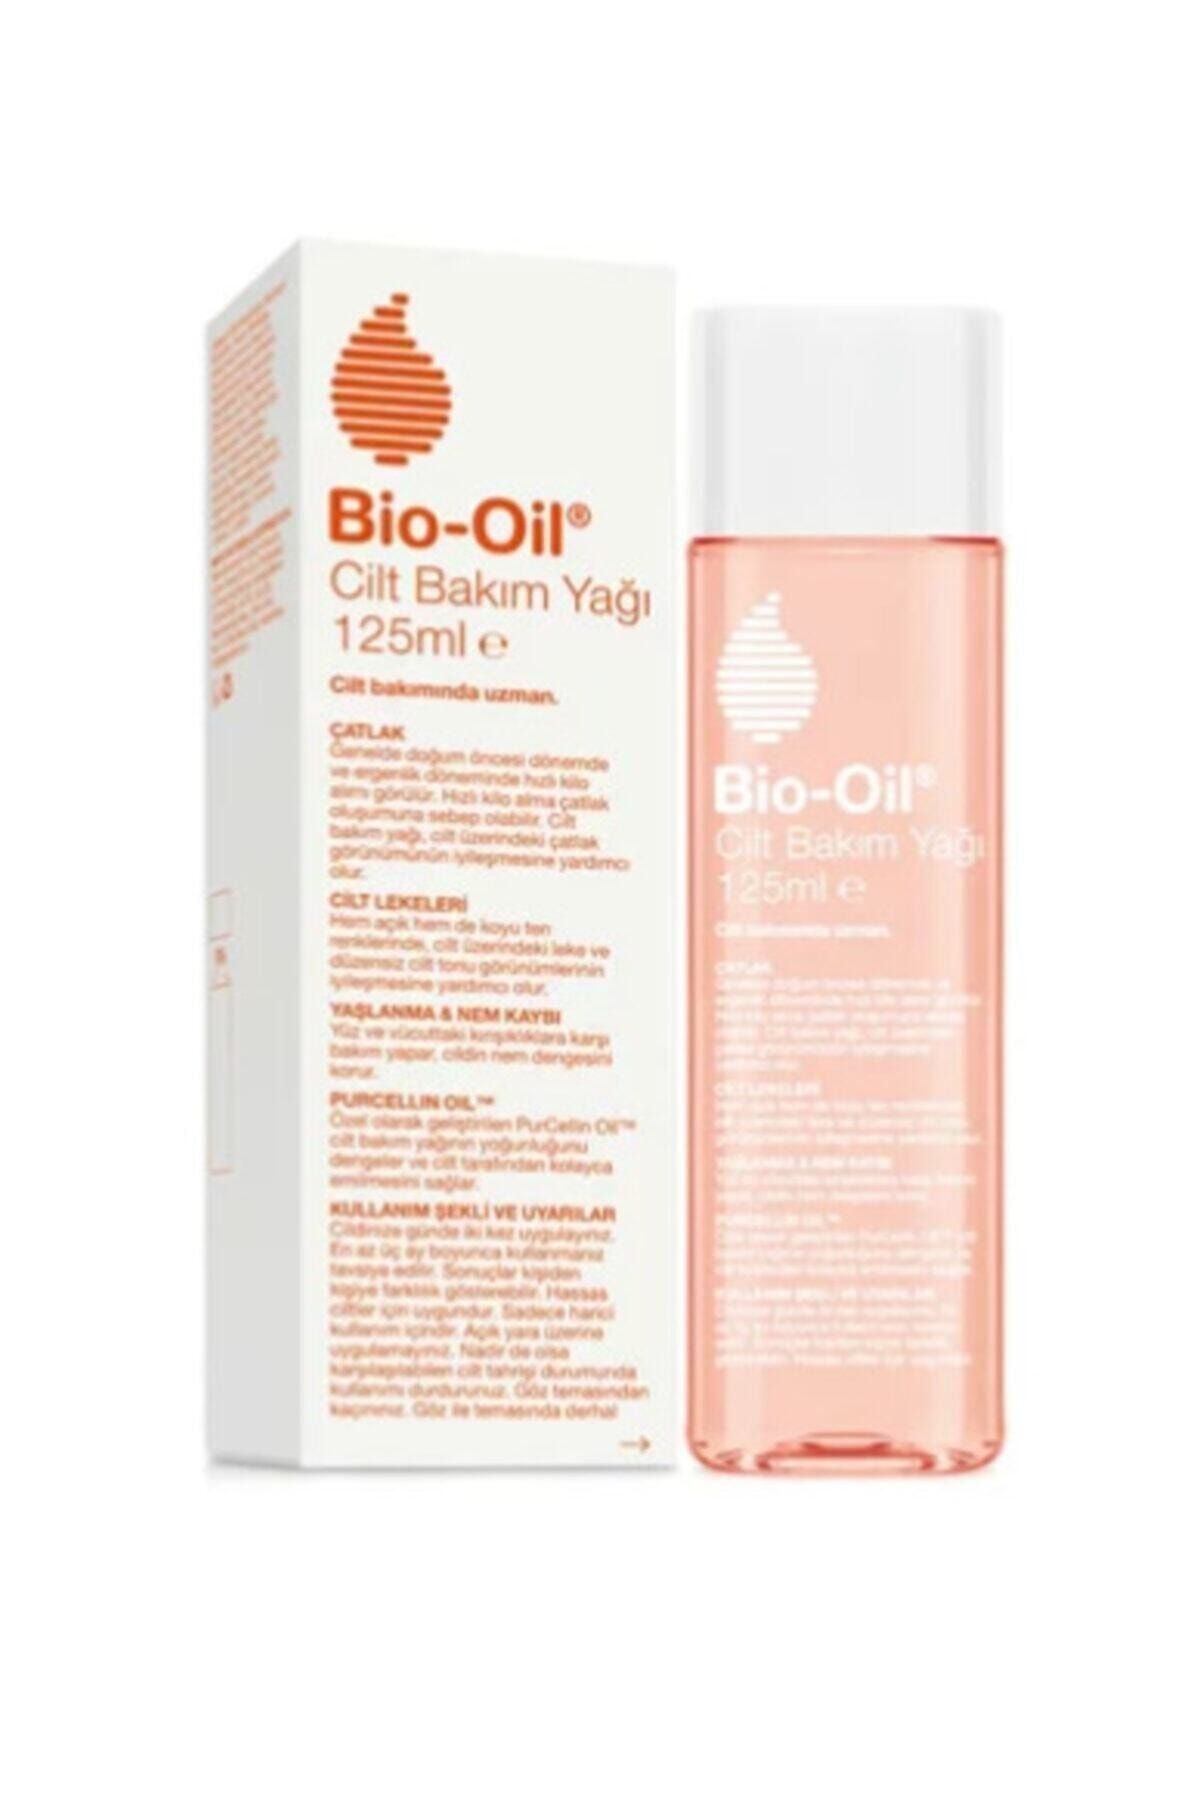 Bio-Oil Bio Oil Cilt Bakım Yağı 125 ml 2'li Set